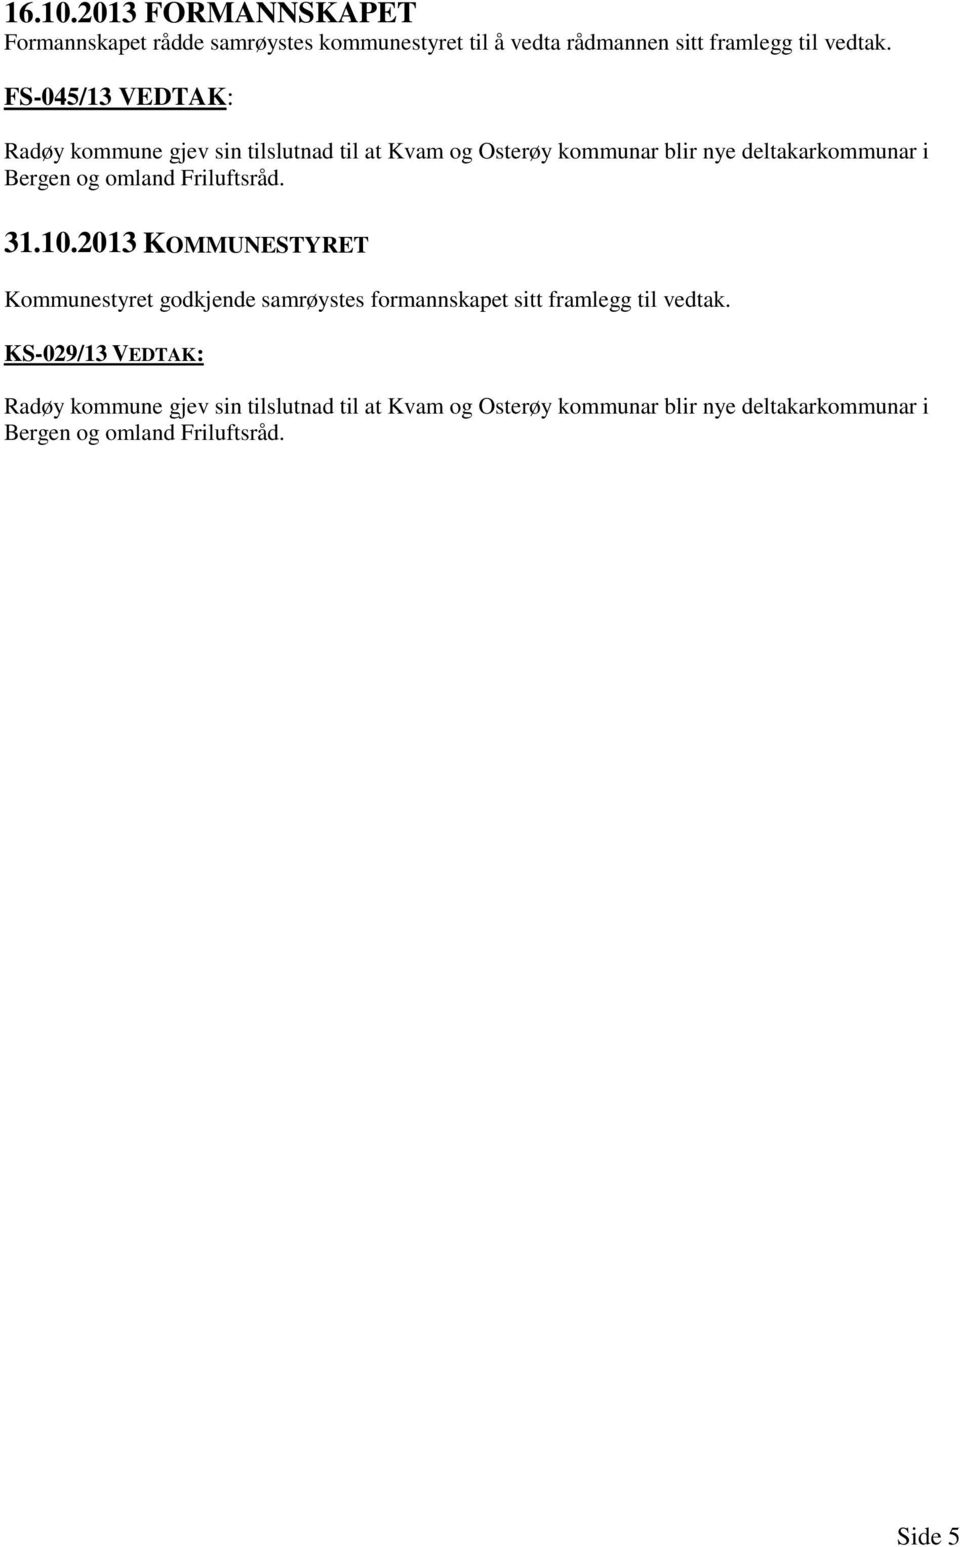 omland Friluftsråd. 31.10.2013 KOMMUNESTYRET Kommunestyret godkjende samrøystes formannskapet sitt framlegg til vedtak.